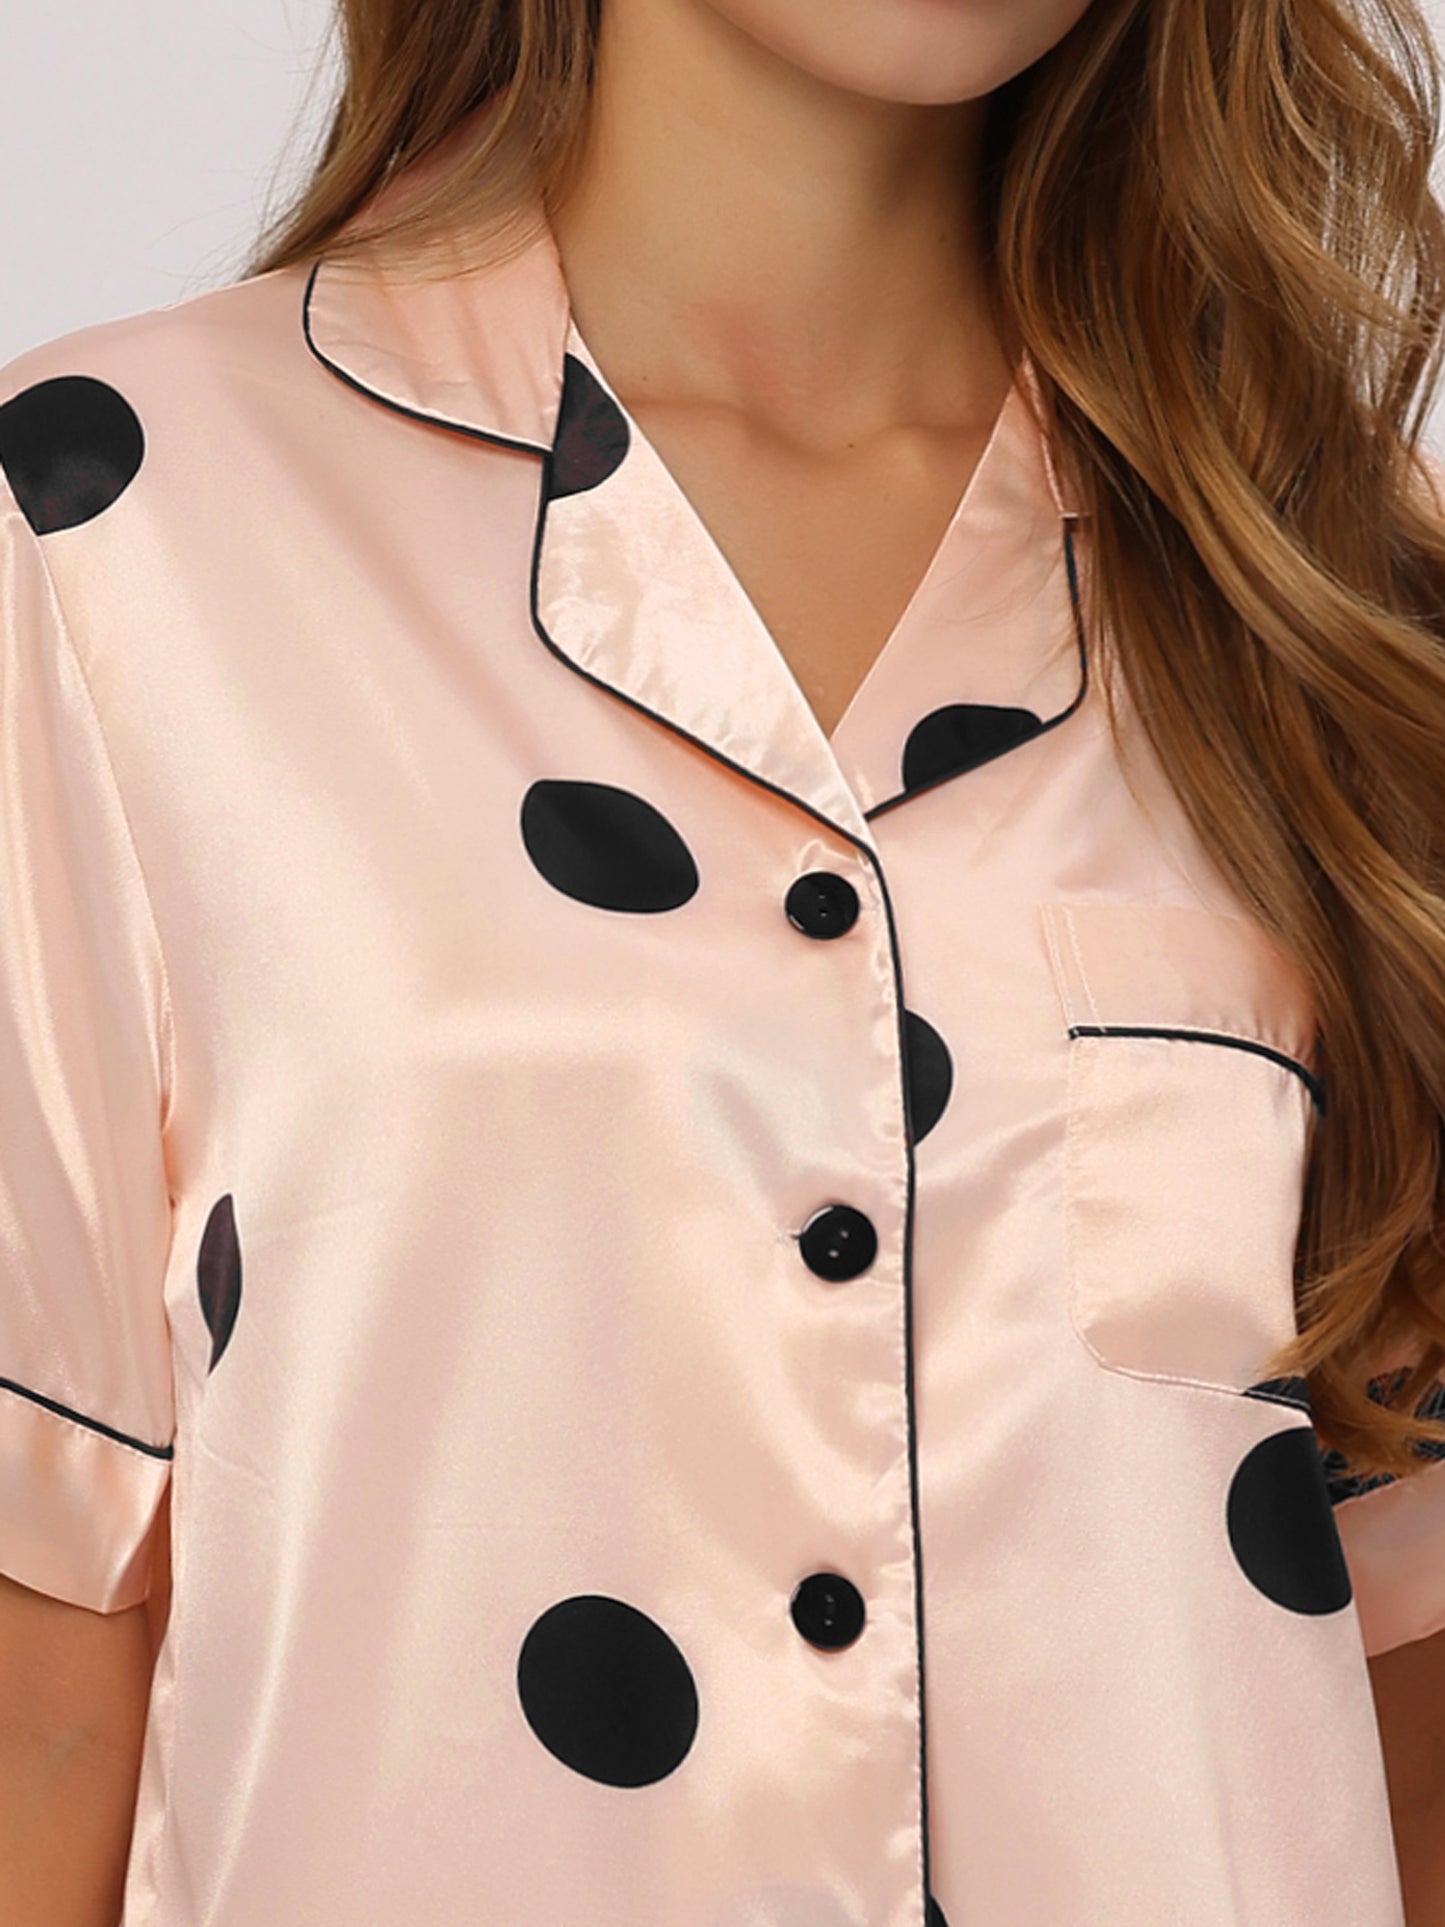 cheibear Satin 2pcs Lounge Sleepwear T-Shirt and Shorts Polka Dots Pajama Sets Champagne Pink